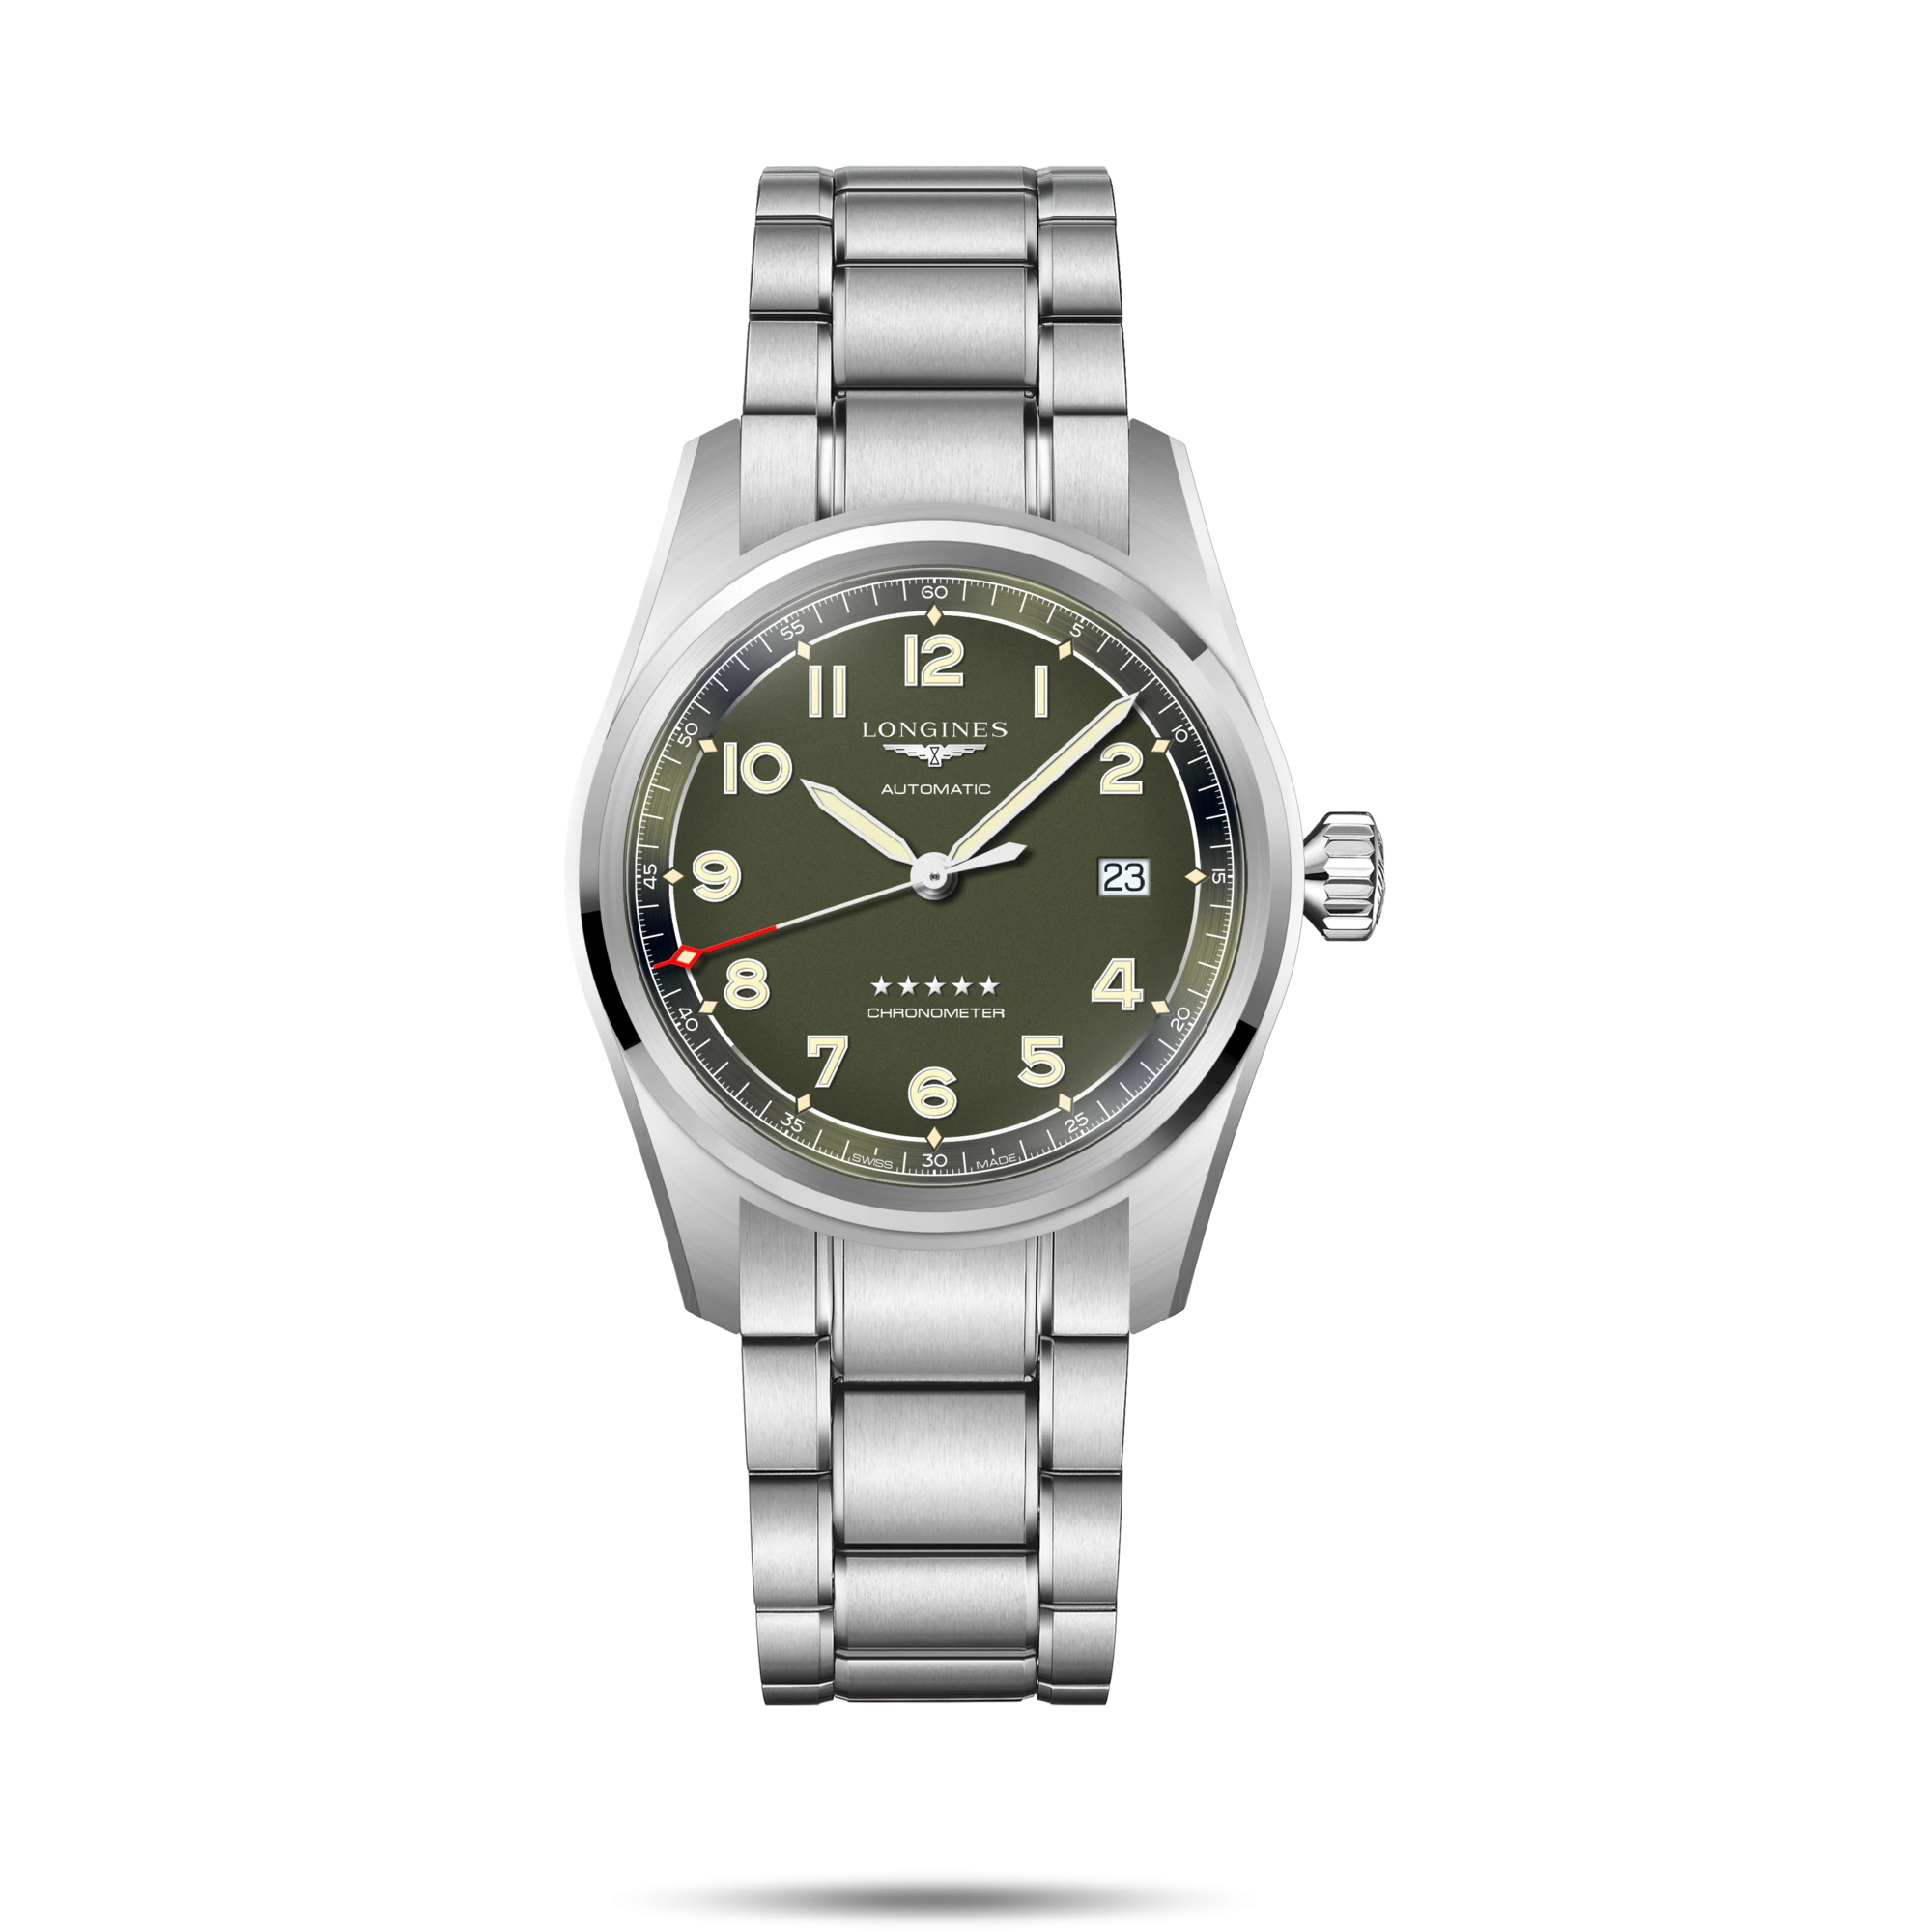 ساعت لونژین مدل L3.810.4.03.6